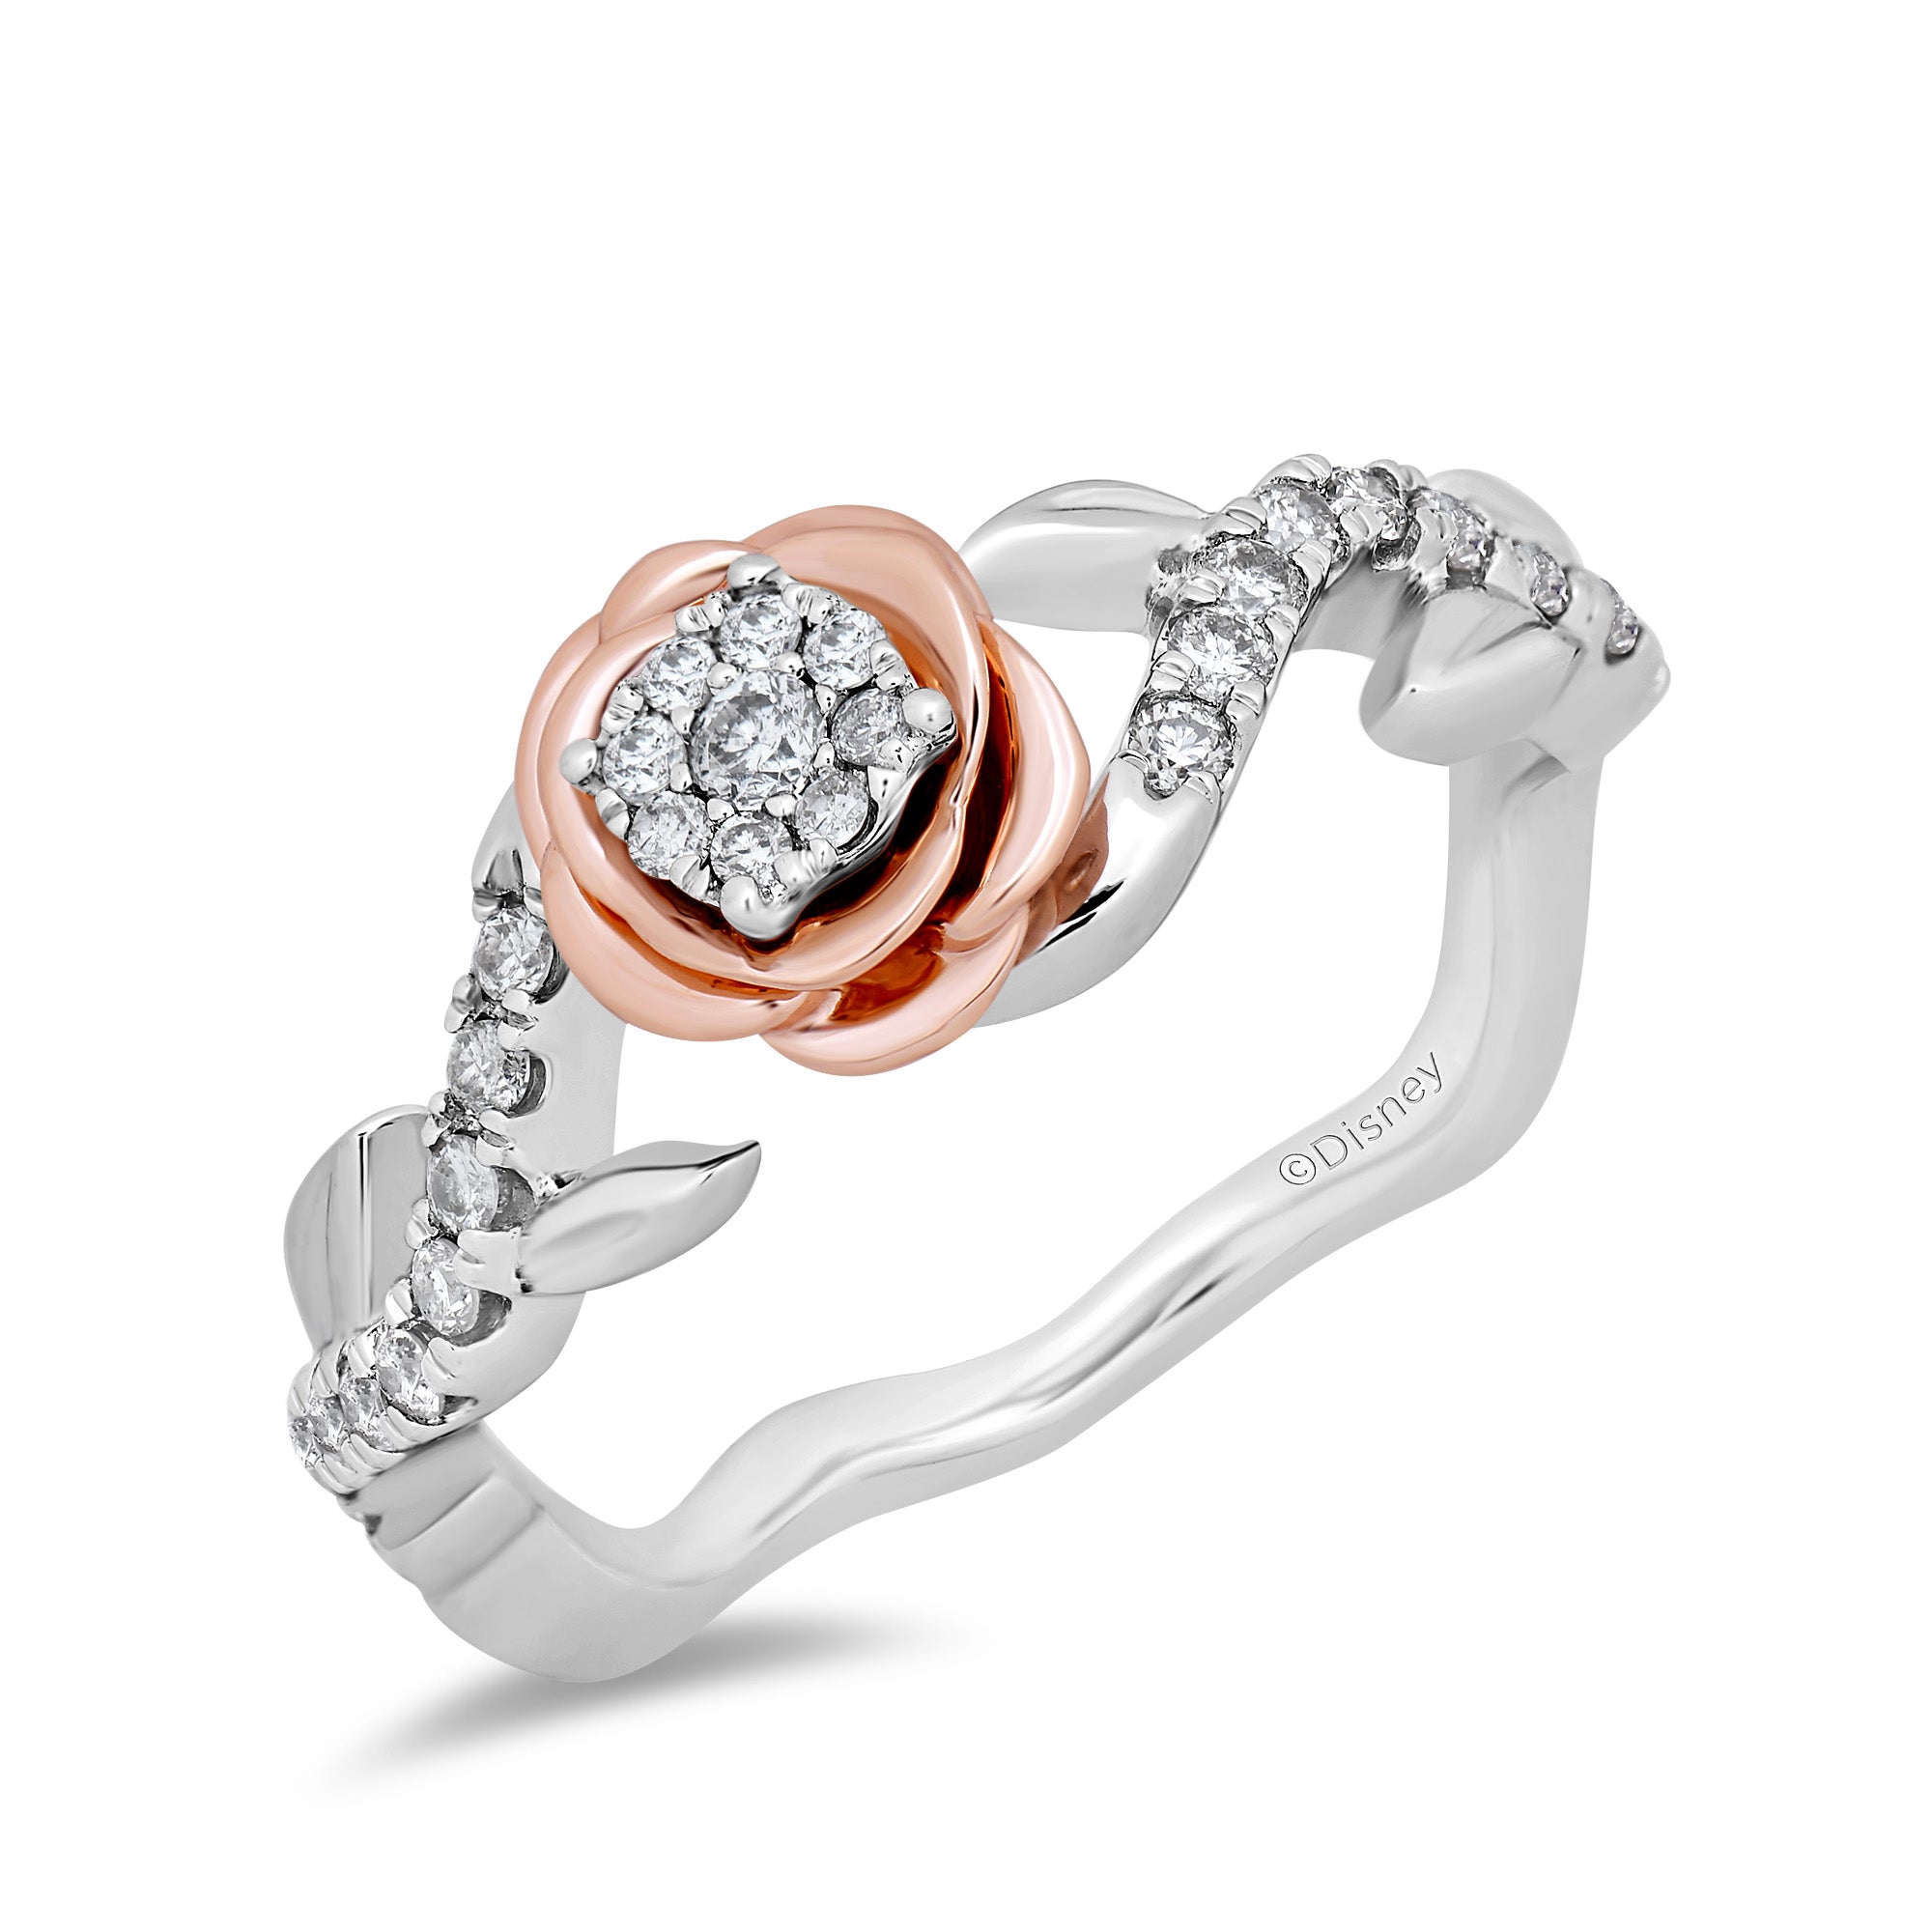 Disney Belle Inspired Diamond Promise Ring in 14K White Gold